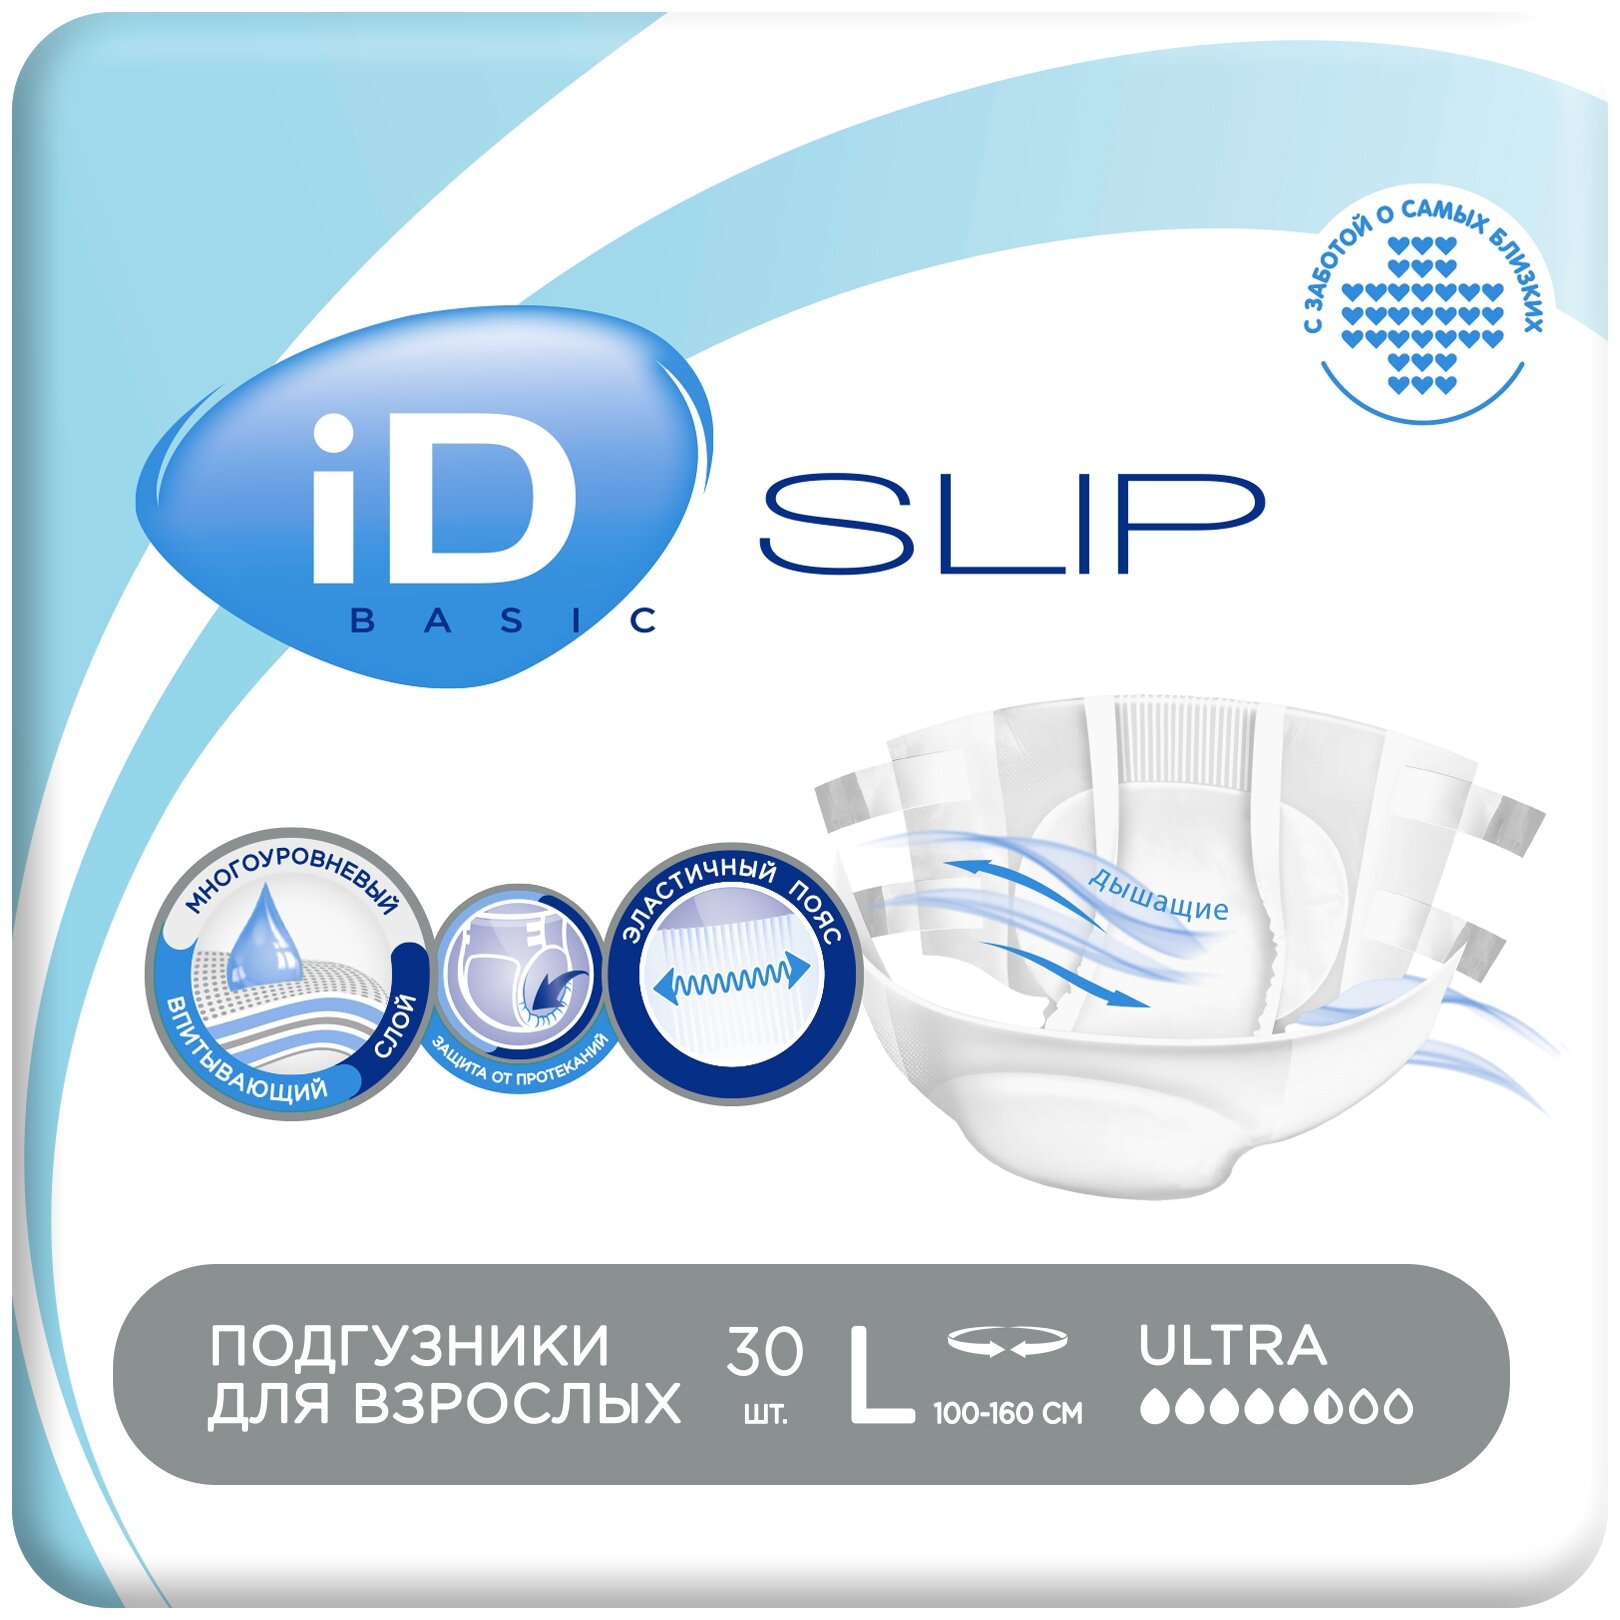 Подгузники для взрослых iD Slip Basic, L, 100-160 см, 30 шт./уп.